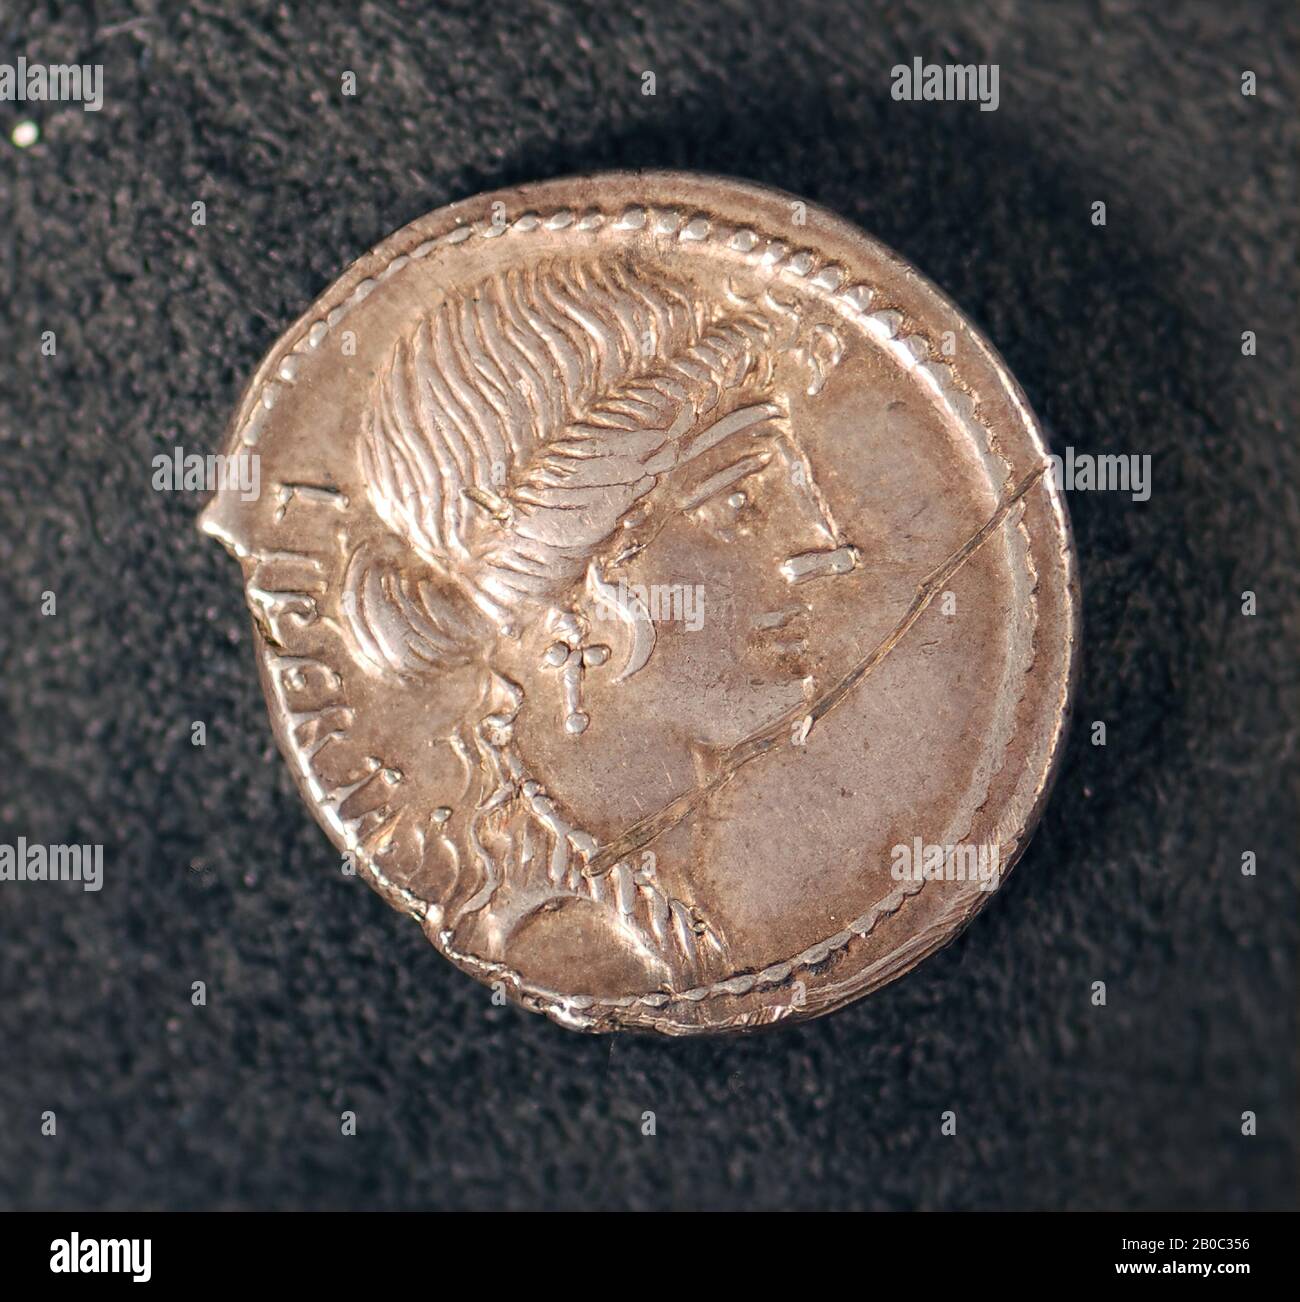 Unknown Artist, Denarius of Marcus Junius Brutus (by adoption Q. Servilius Caepio Brutus), 054 BC, silver Stock Photo